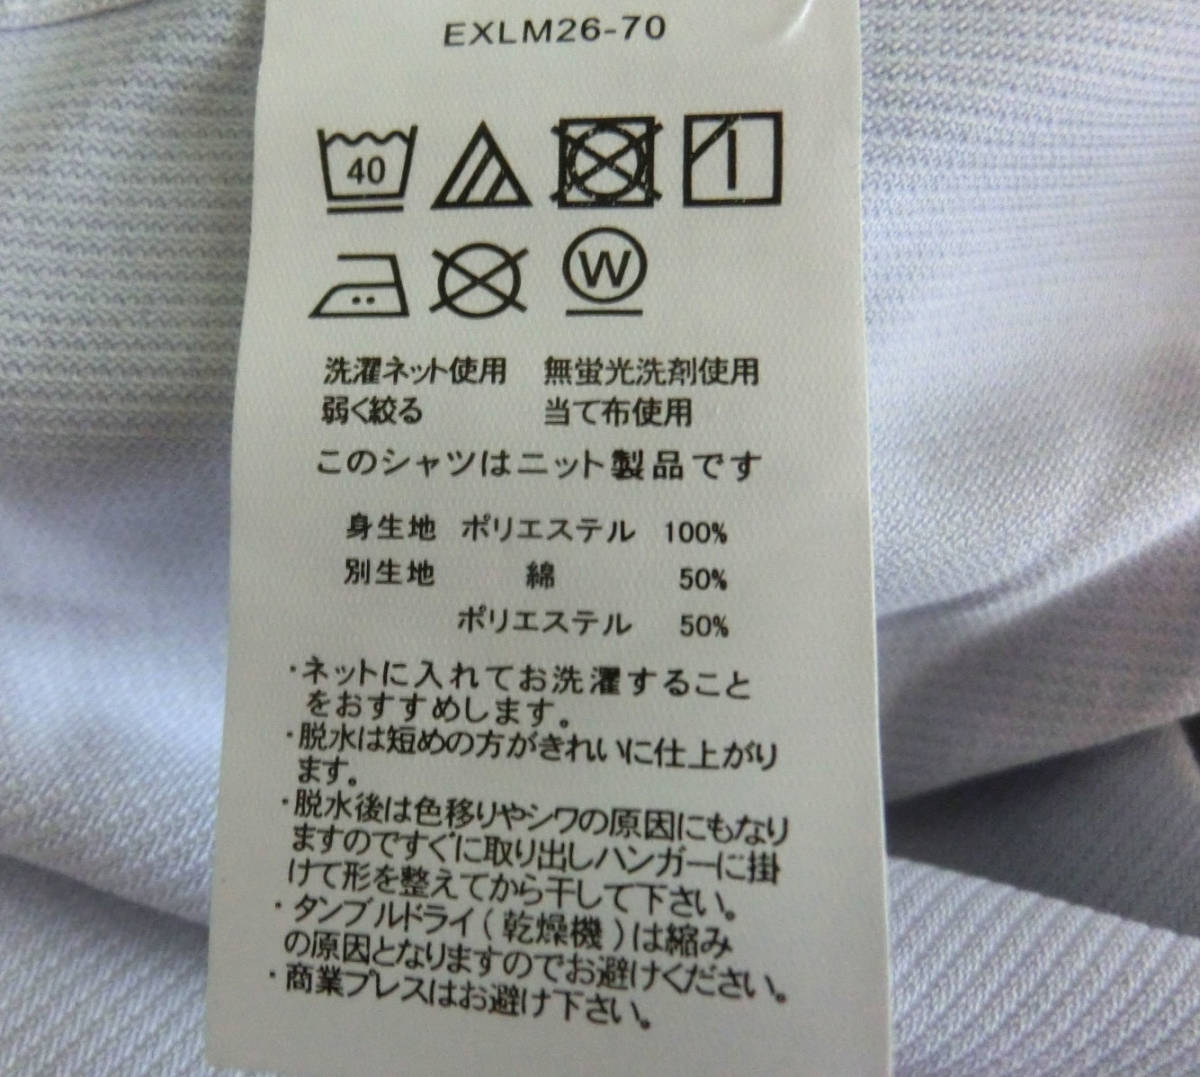 yh177 100011 новый товар Flex Japan высококлассный короткий рукав Y рубашка есть перевод форма устойчивость LL 43. прохладный bizCARPENTARIA оттенок голубого бледно-голубой? кнопка down 